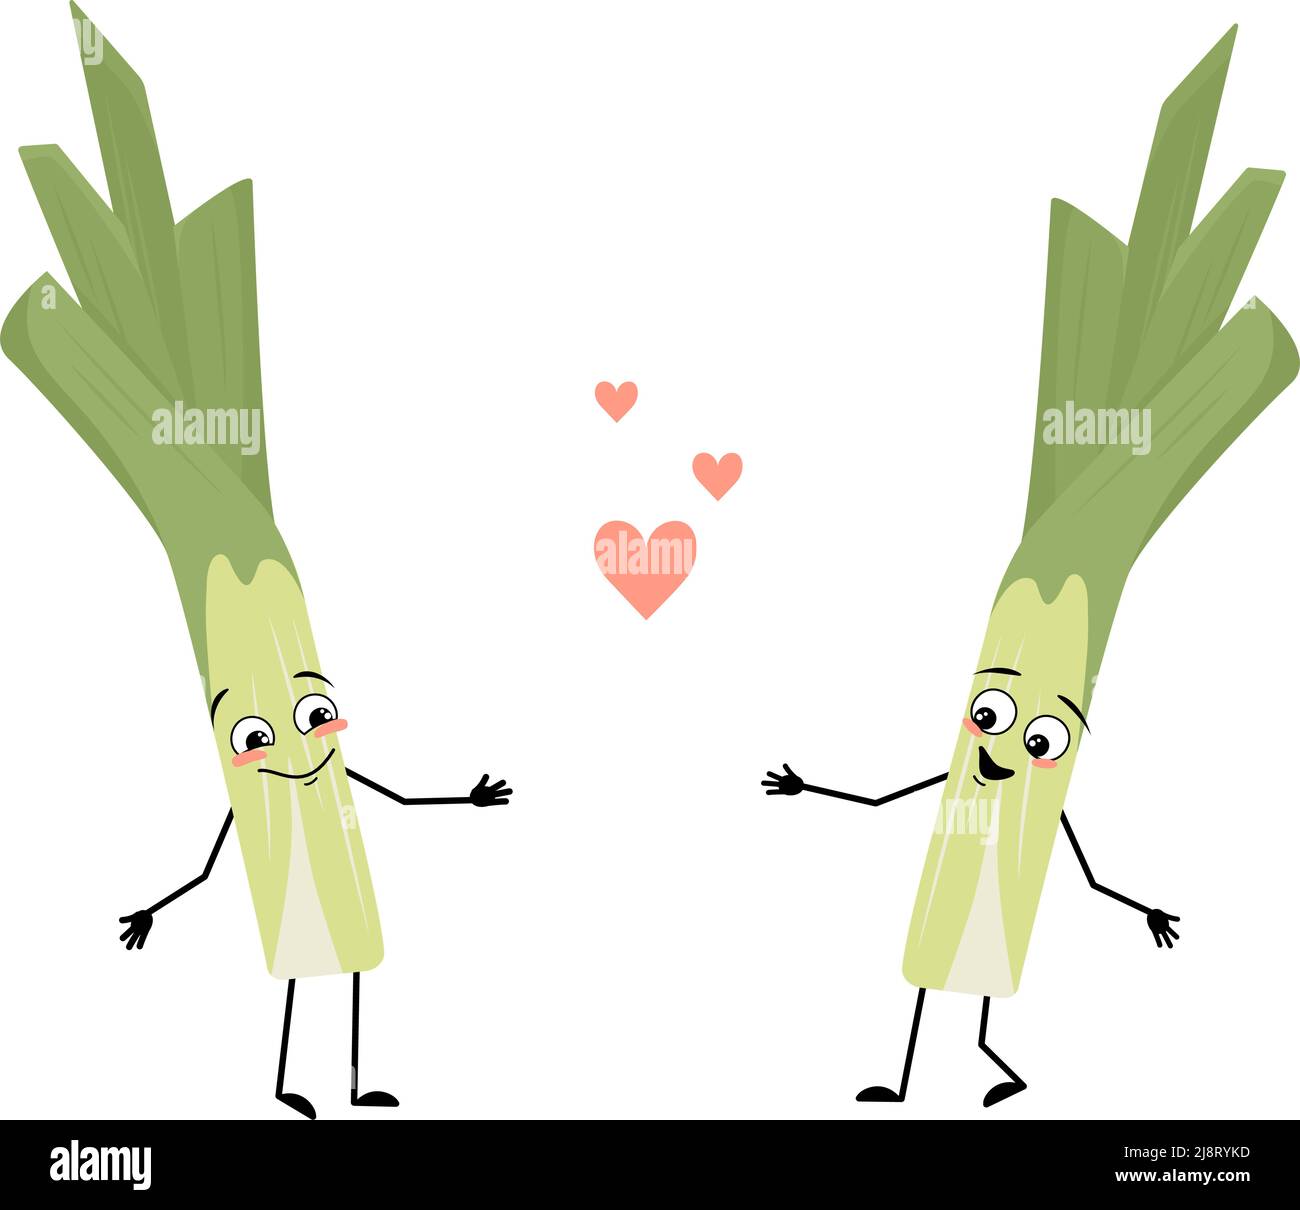 Niedliche grüne Lauch-Charakter mit Liebe Emotionen, Lächeln Gesicht, Arme und Beine. Gesundes Gemüse mit lustigem Ausdruck und Haltung, reich an Vitaminen. Vektorgrafik flach Stock Vektor